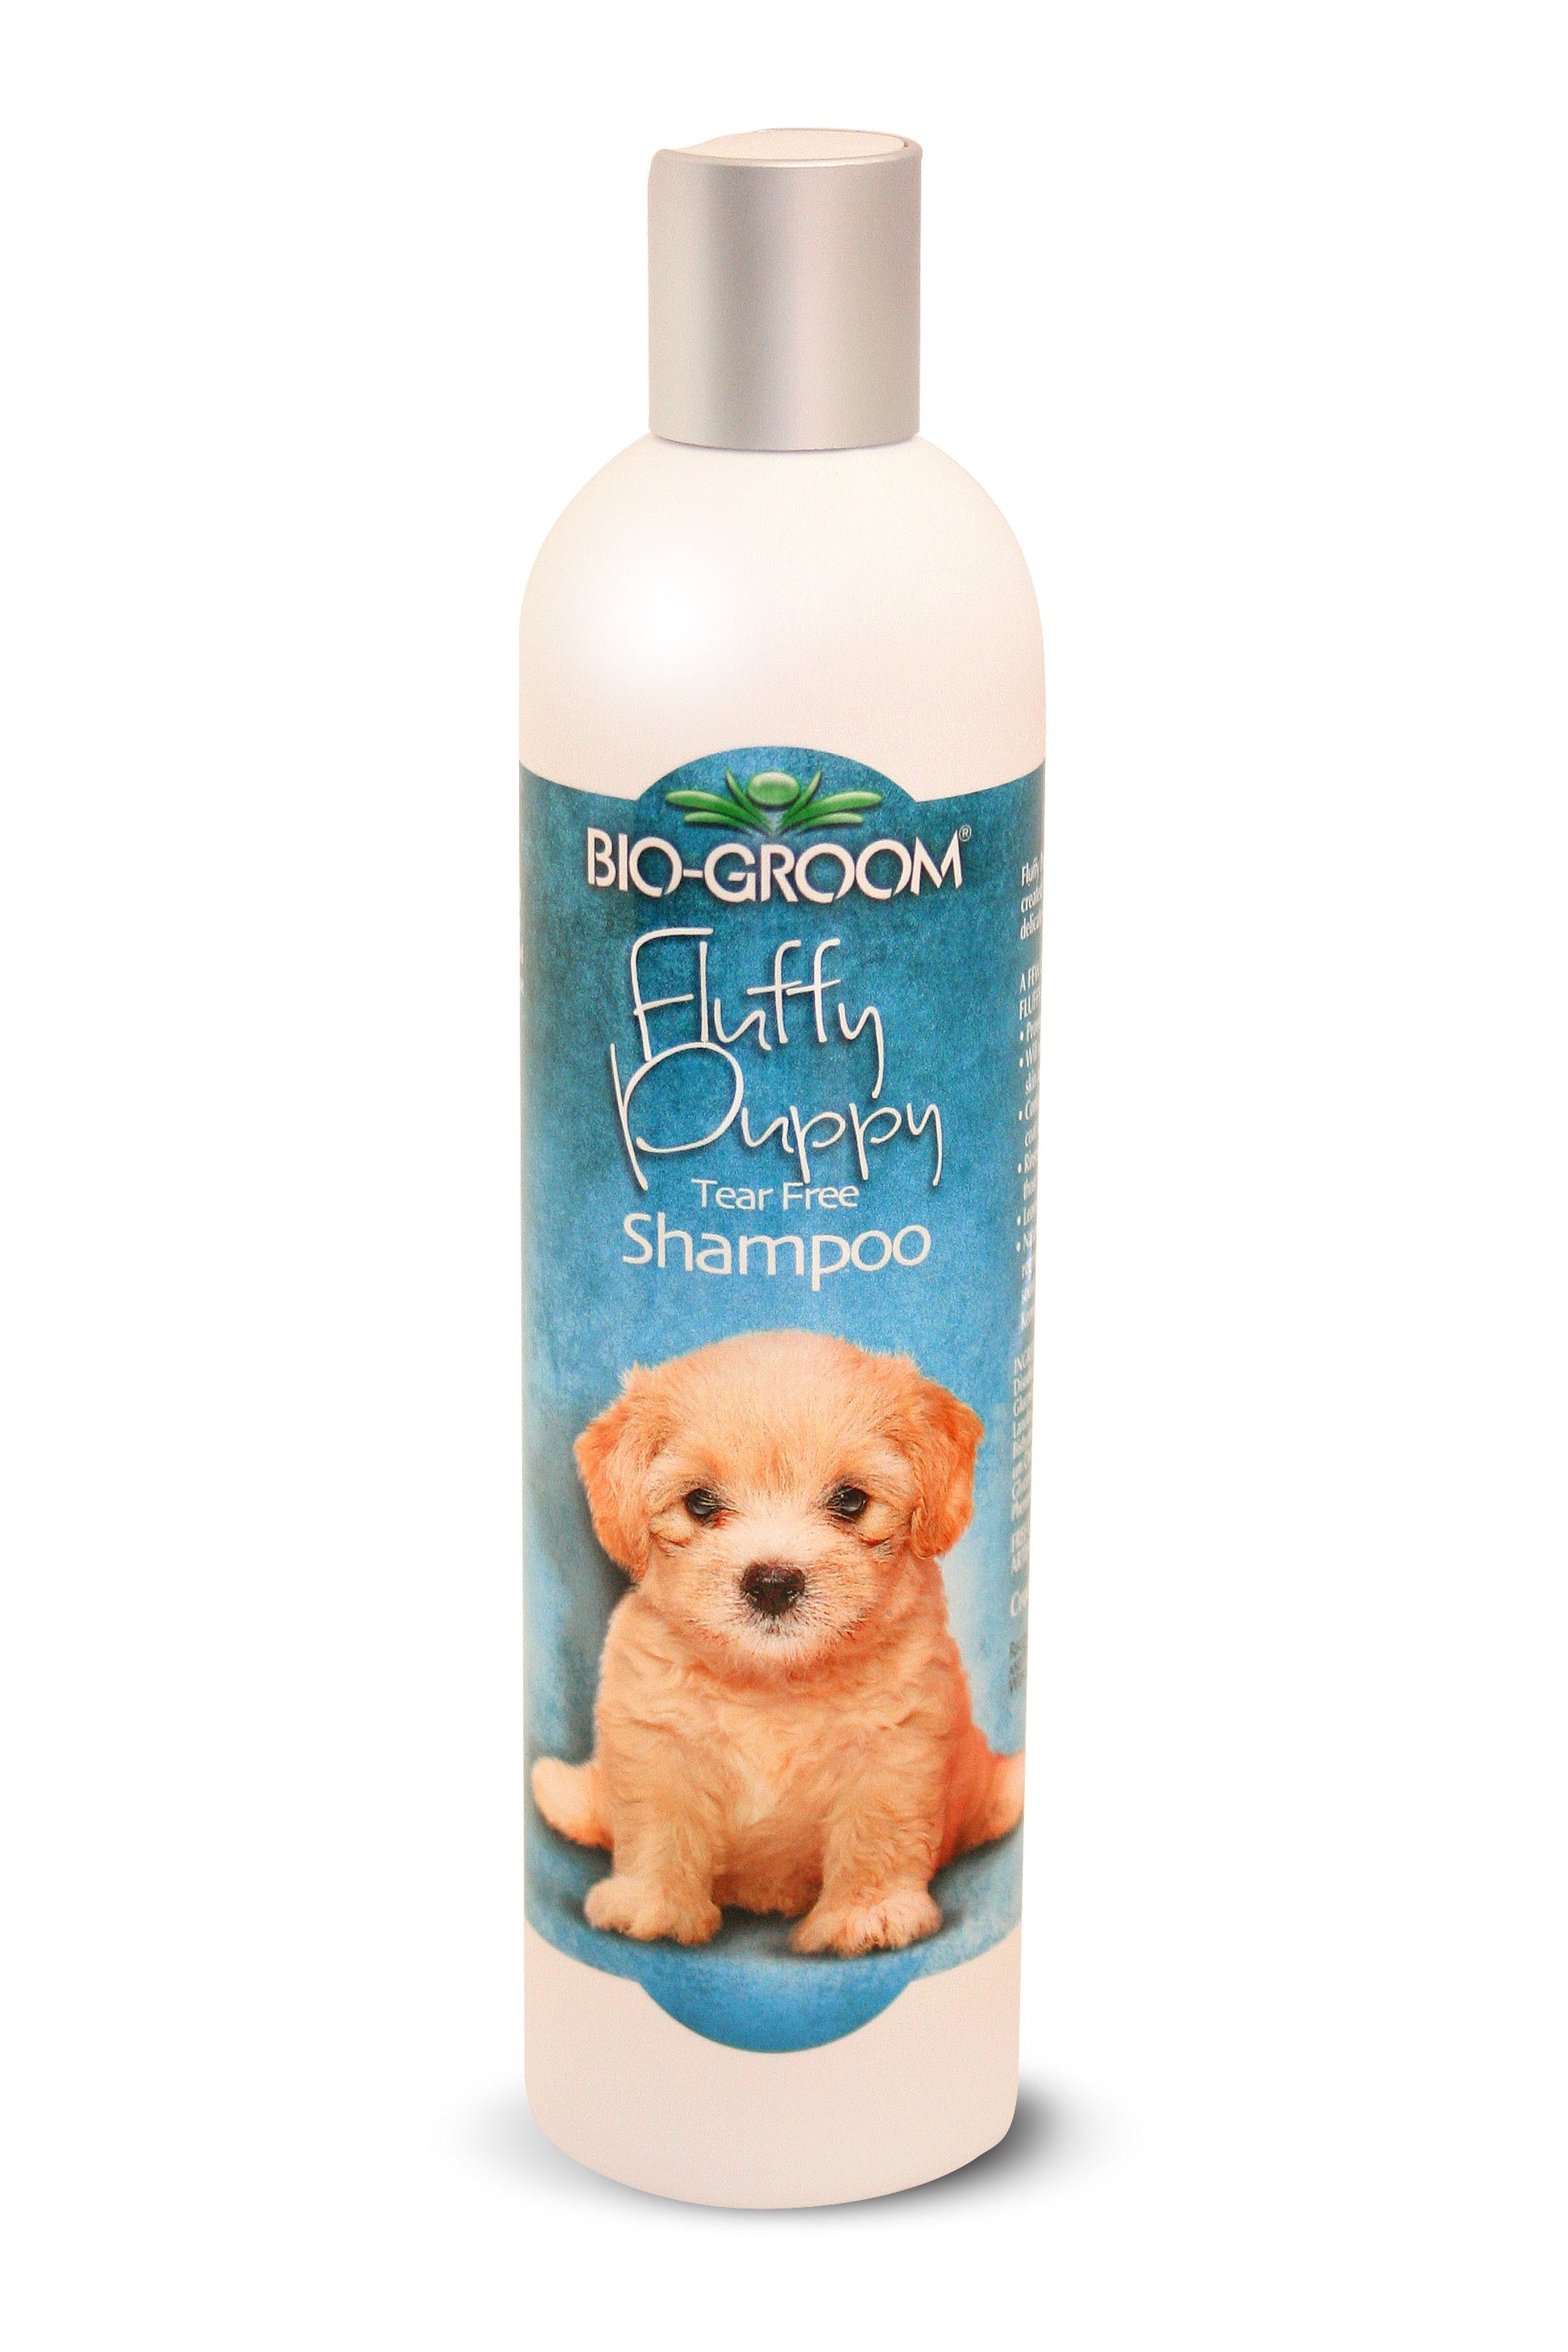 Bio-Groom Fluffy Puppy Tear Free Shampoo, 355 ml - Petsgool Online